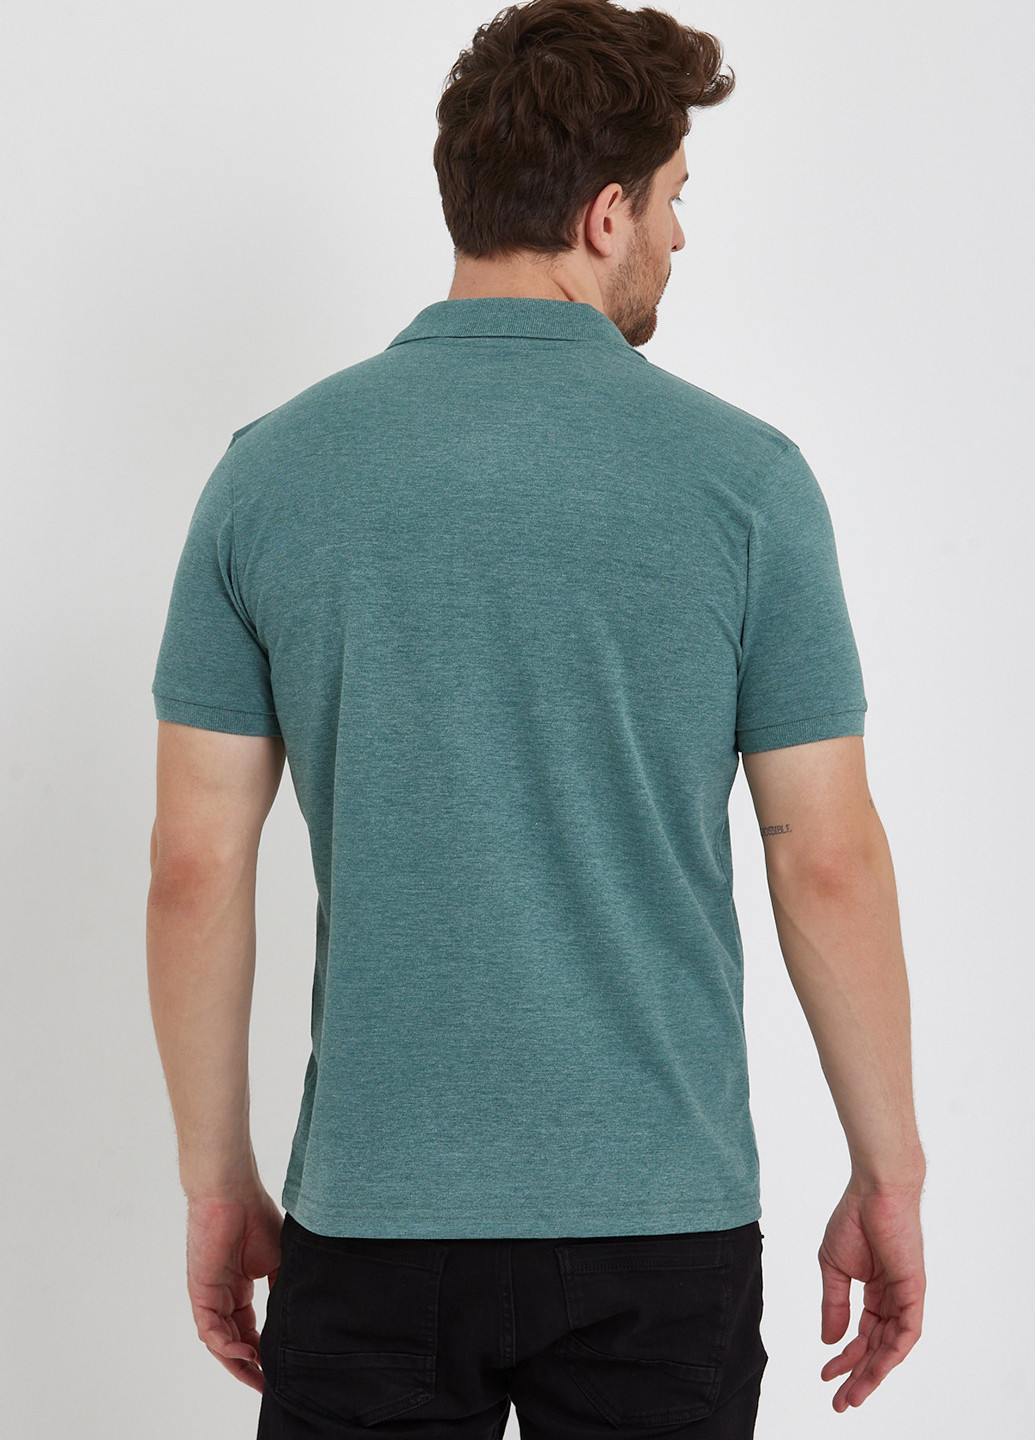 Мятная футболка-поло для мужчин Trend Collection однотонная